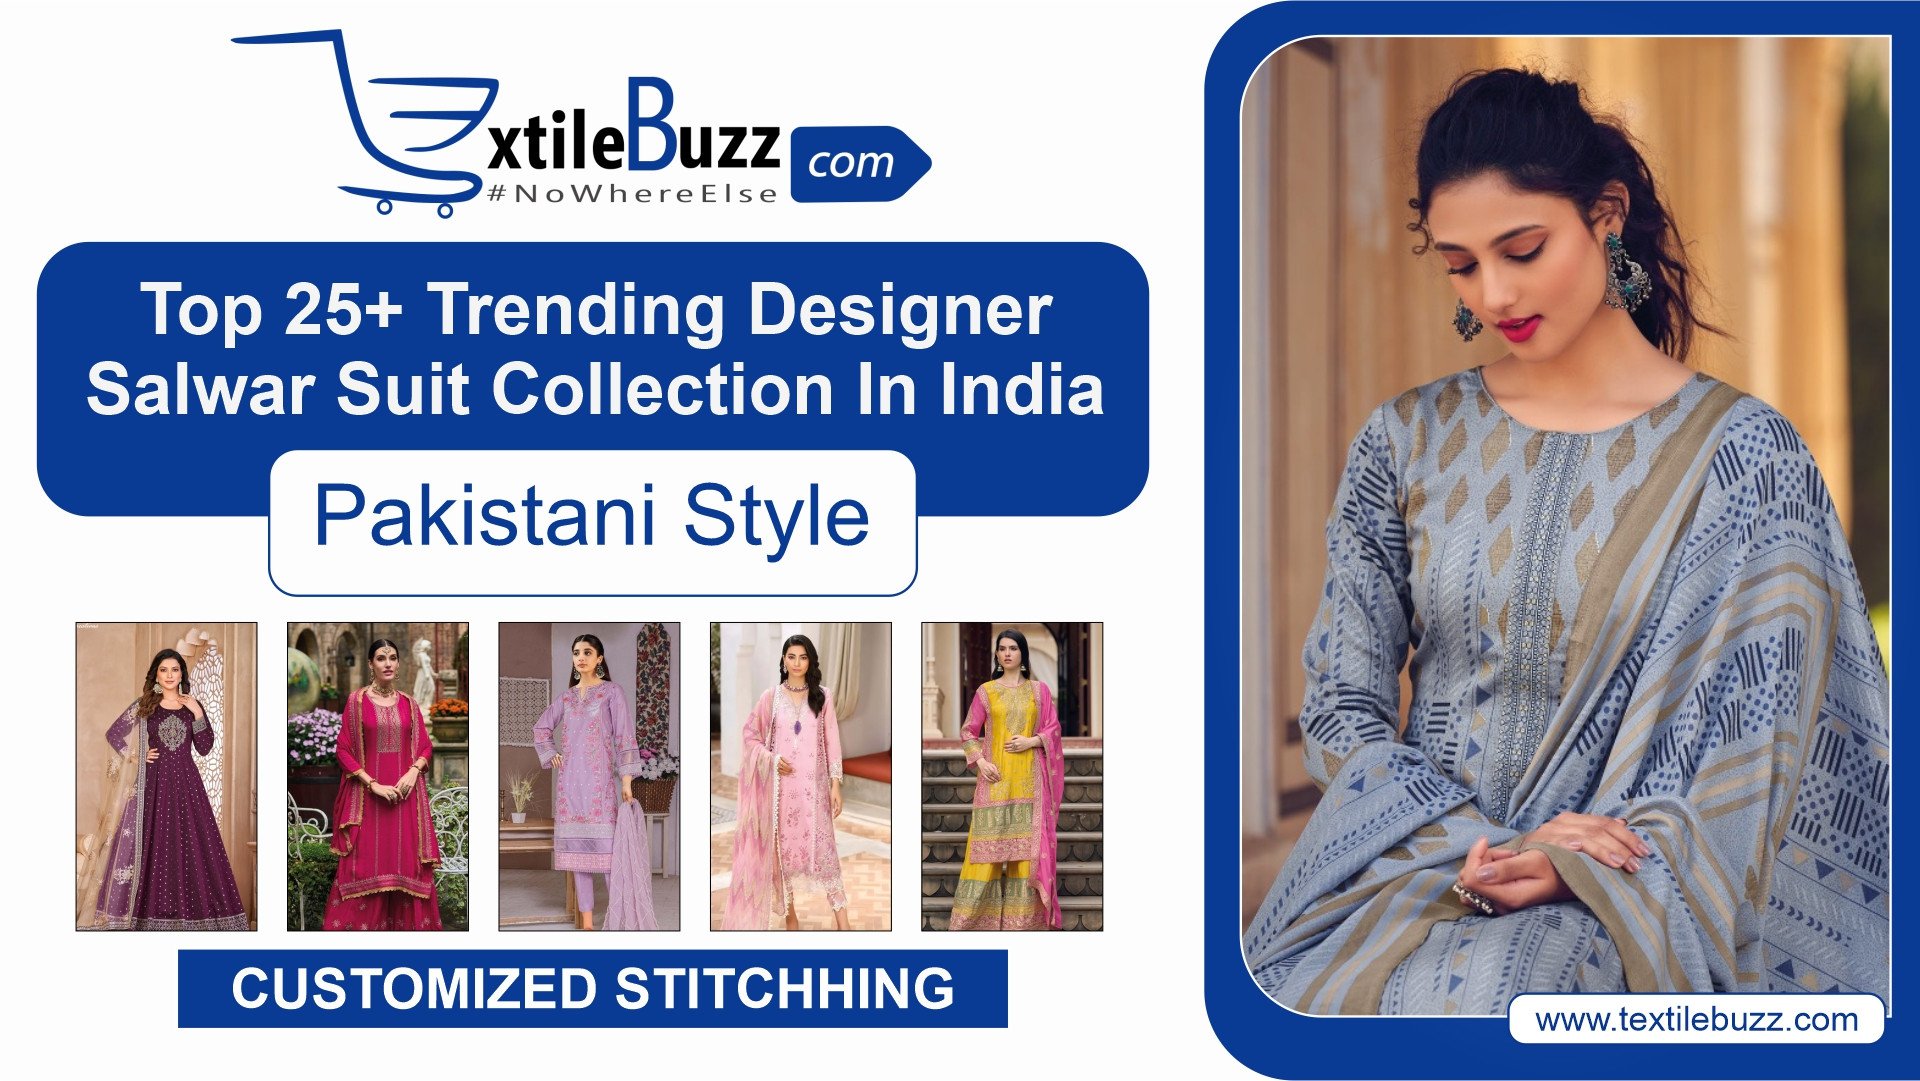 Top 25+ Trending Designer Salwar Suit Collection in India